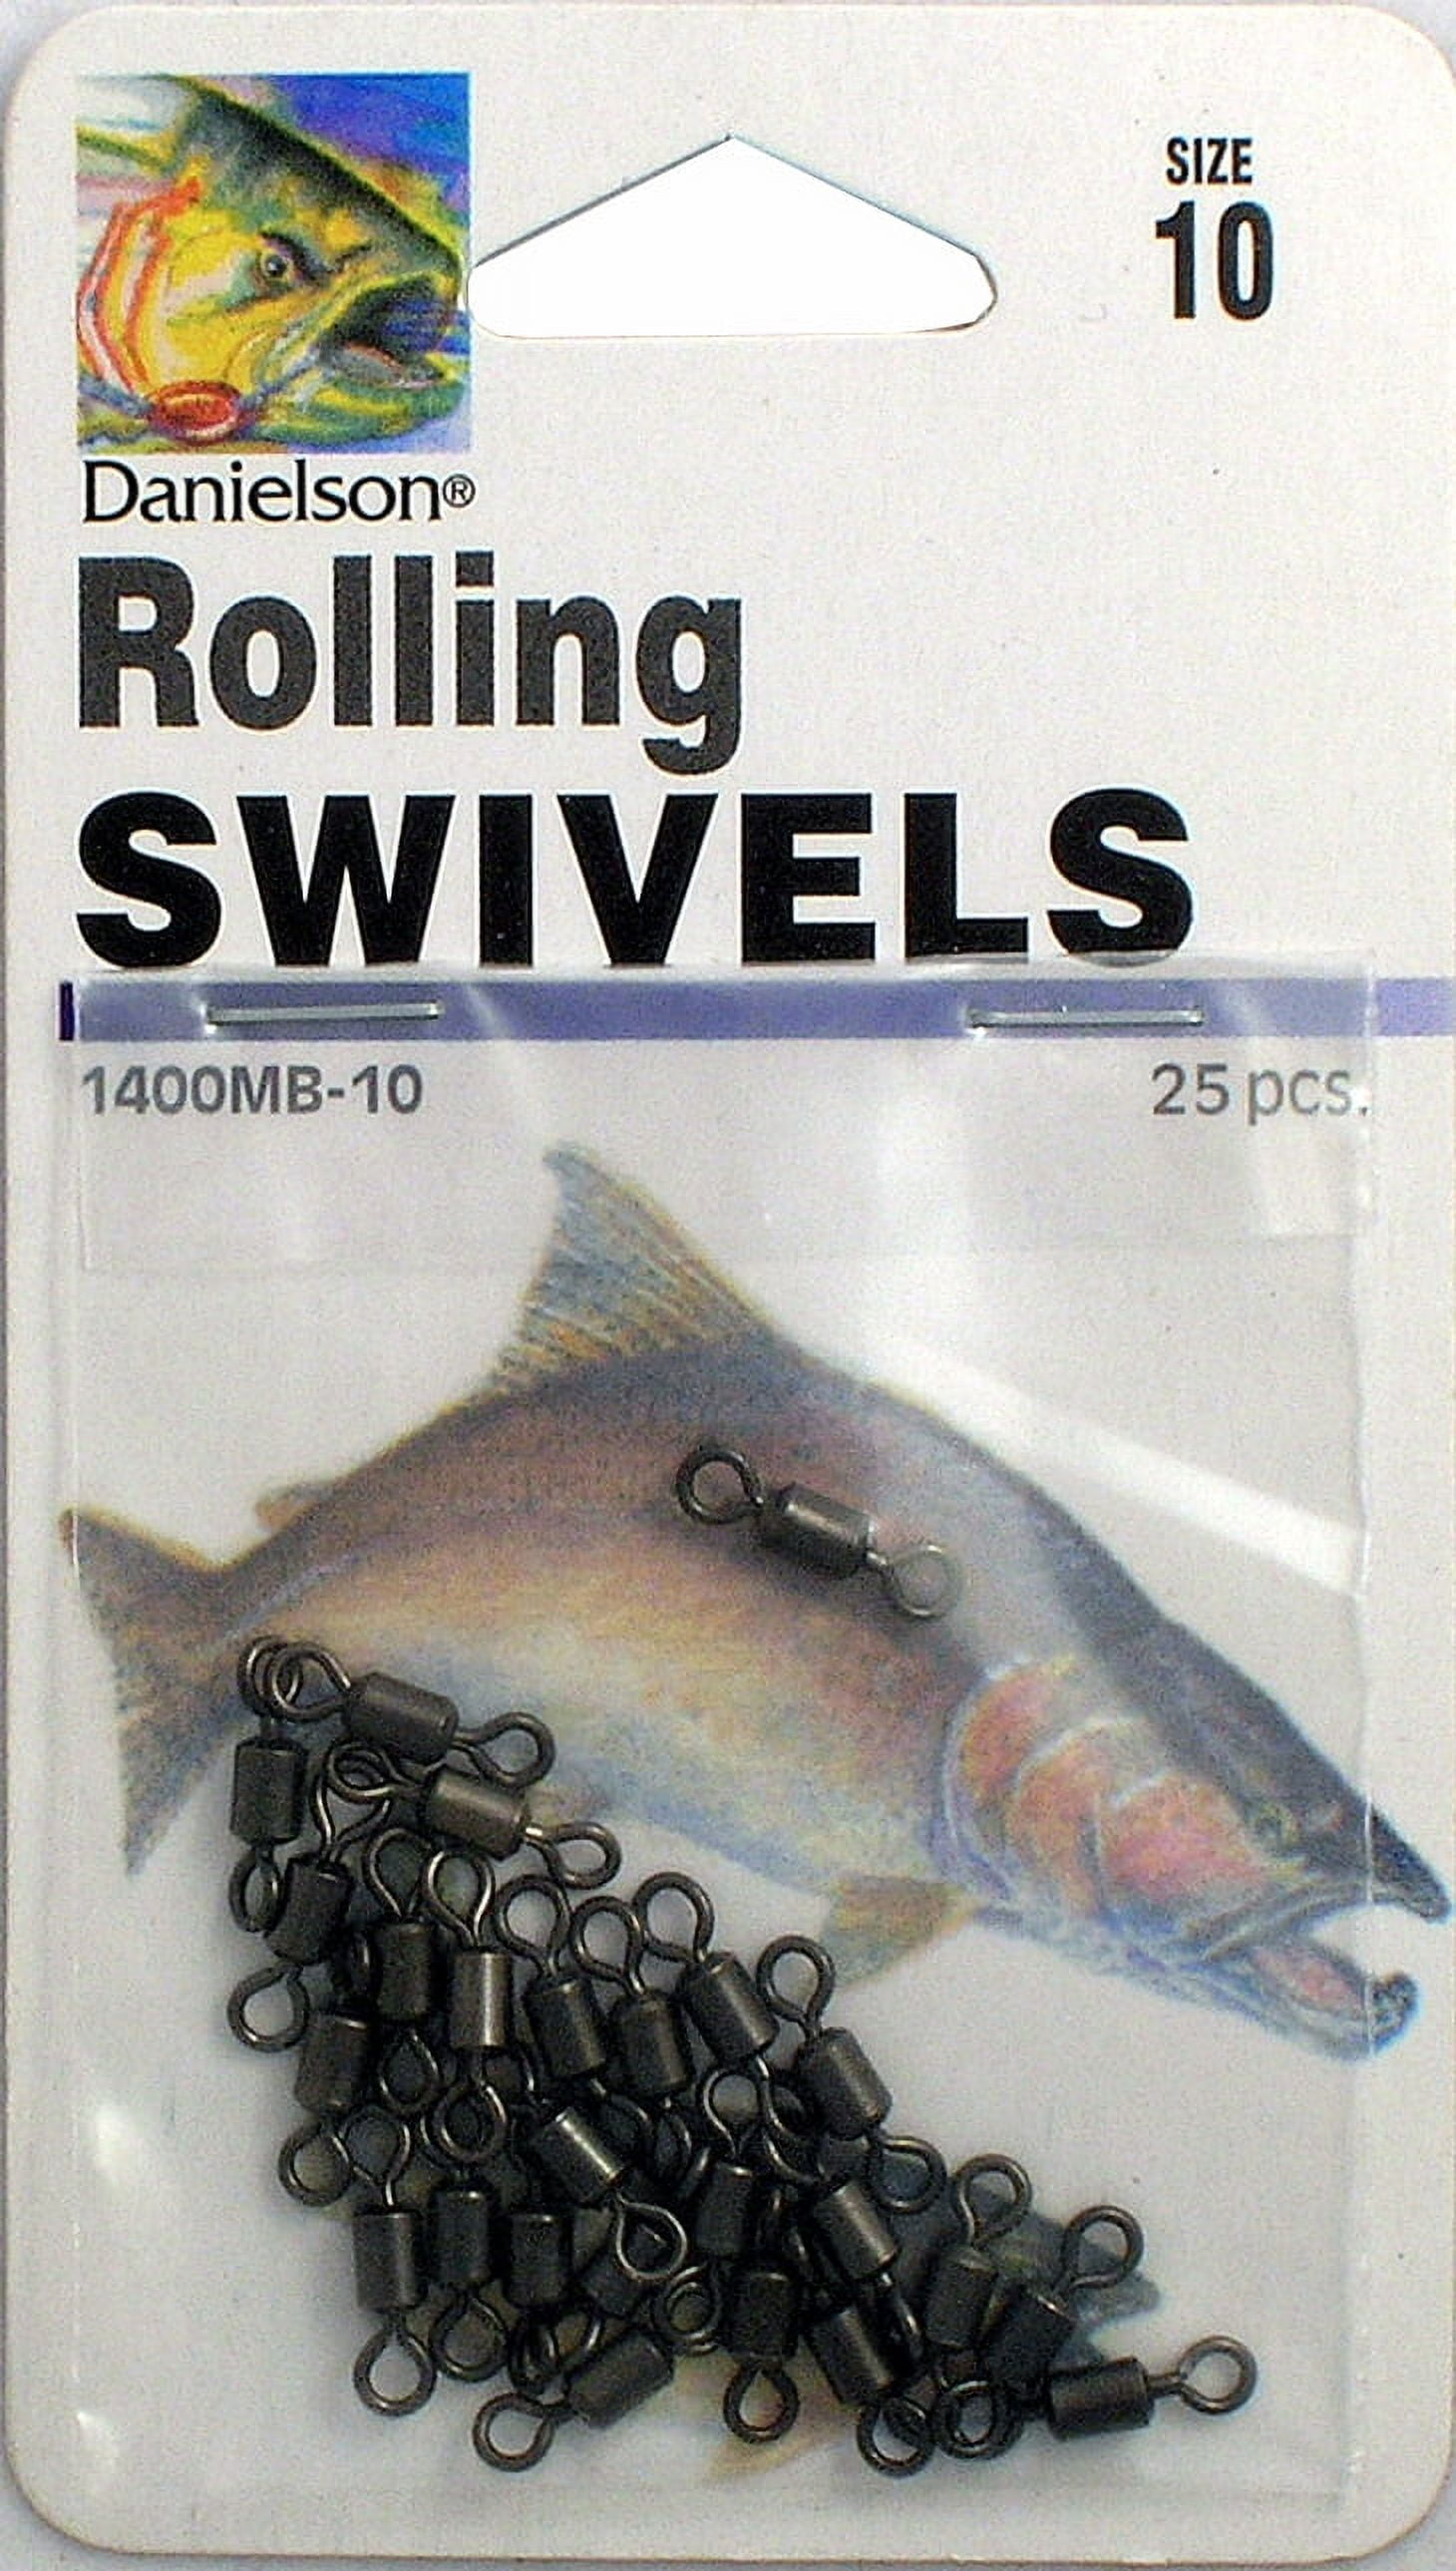 Danielson Rolling Swivel Size 10 25pk 